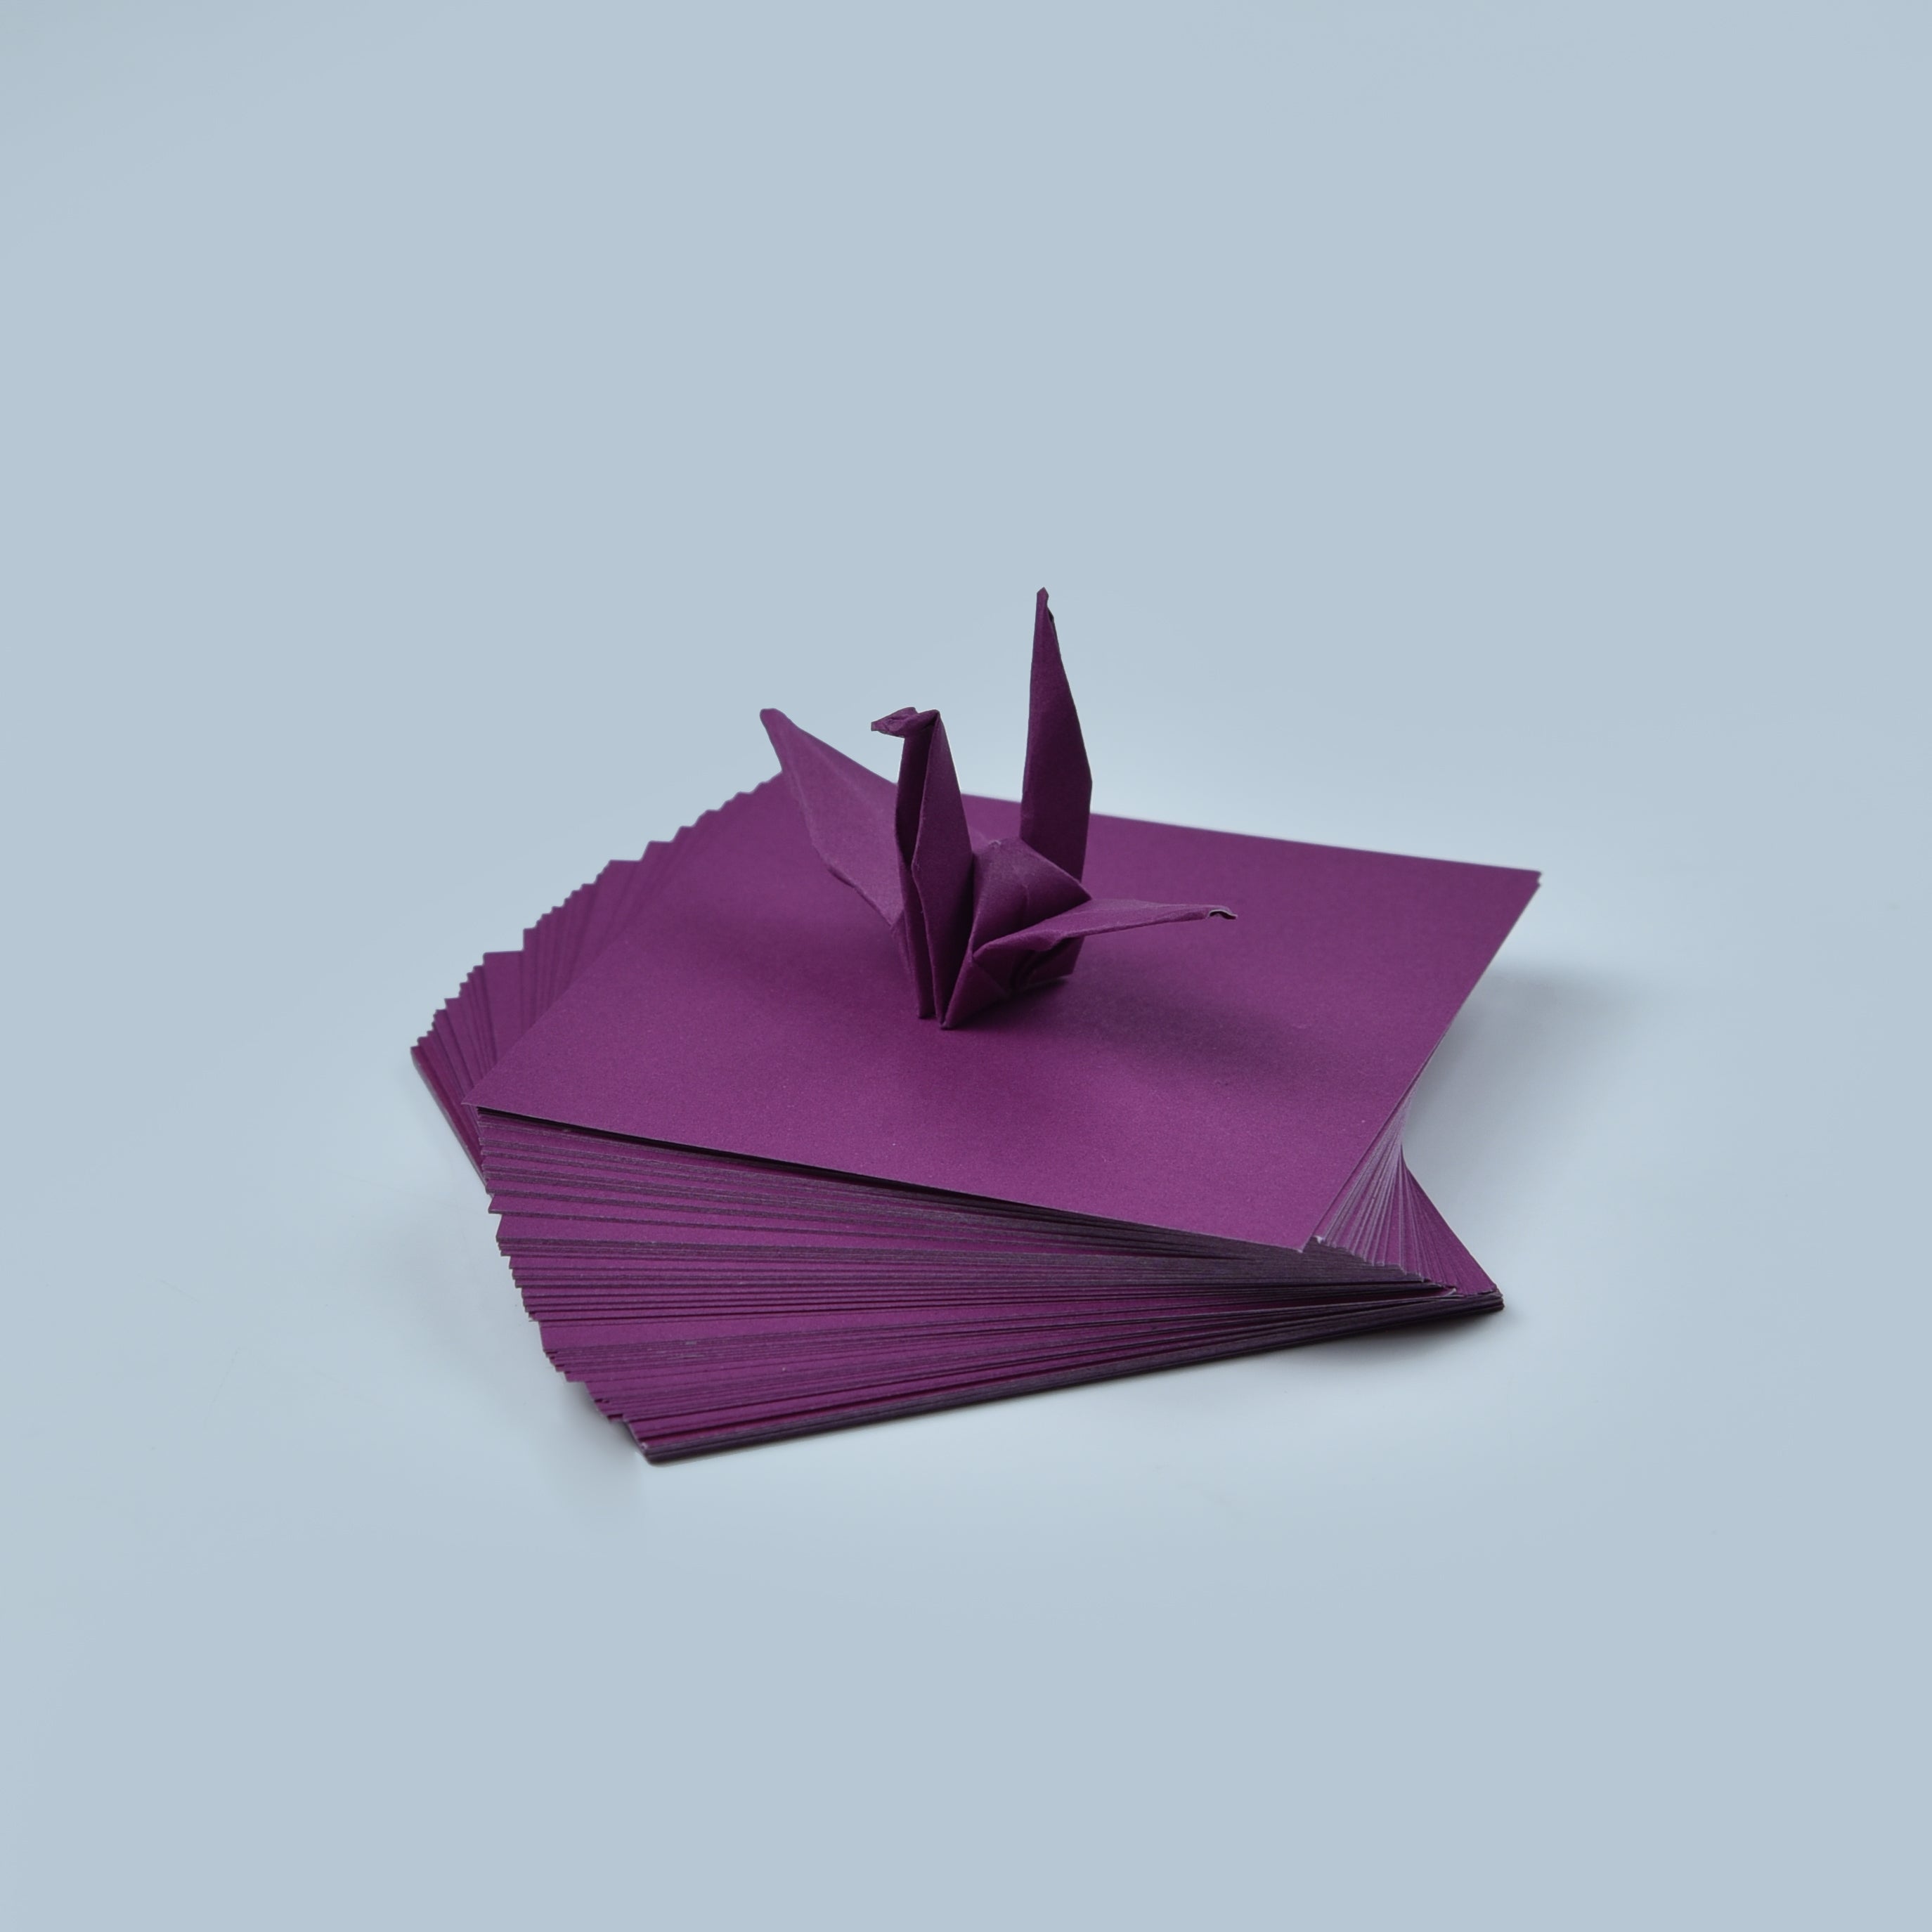 100 fogli di carta origami bordeaux - 3x3 pollici - confezione di carta quadrata per piegare, gru origami e decorazioni - S09